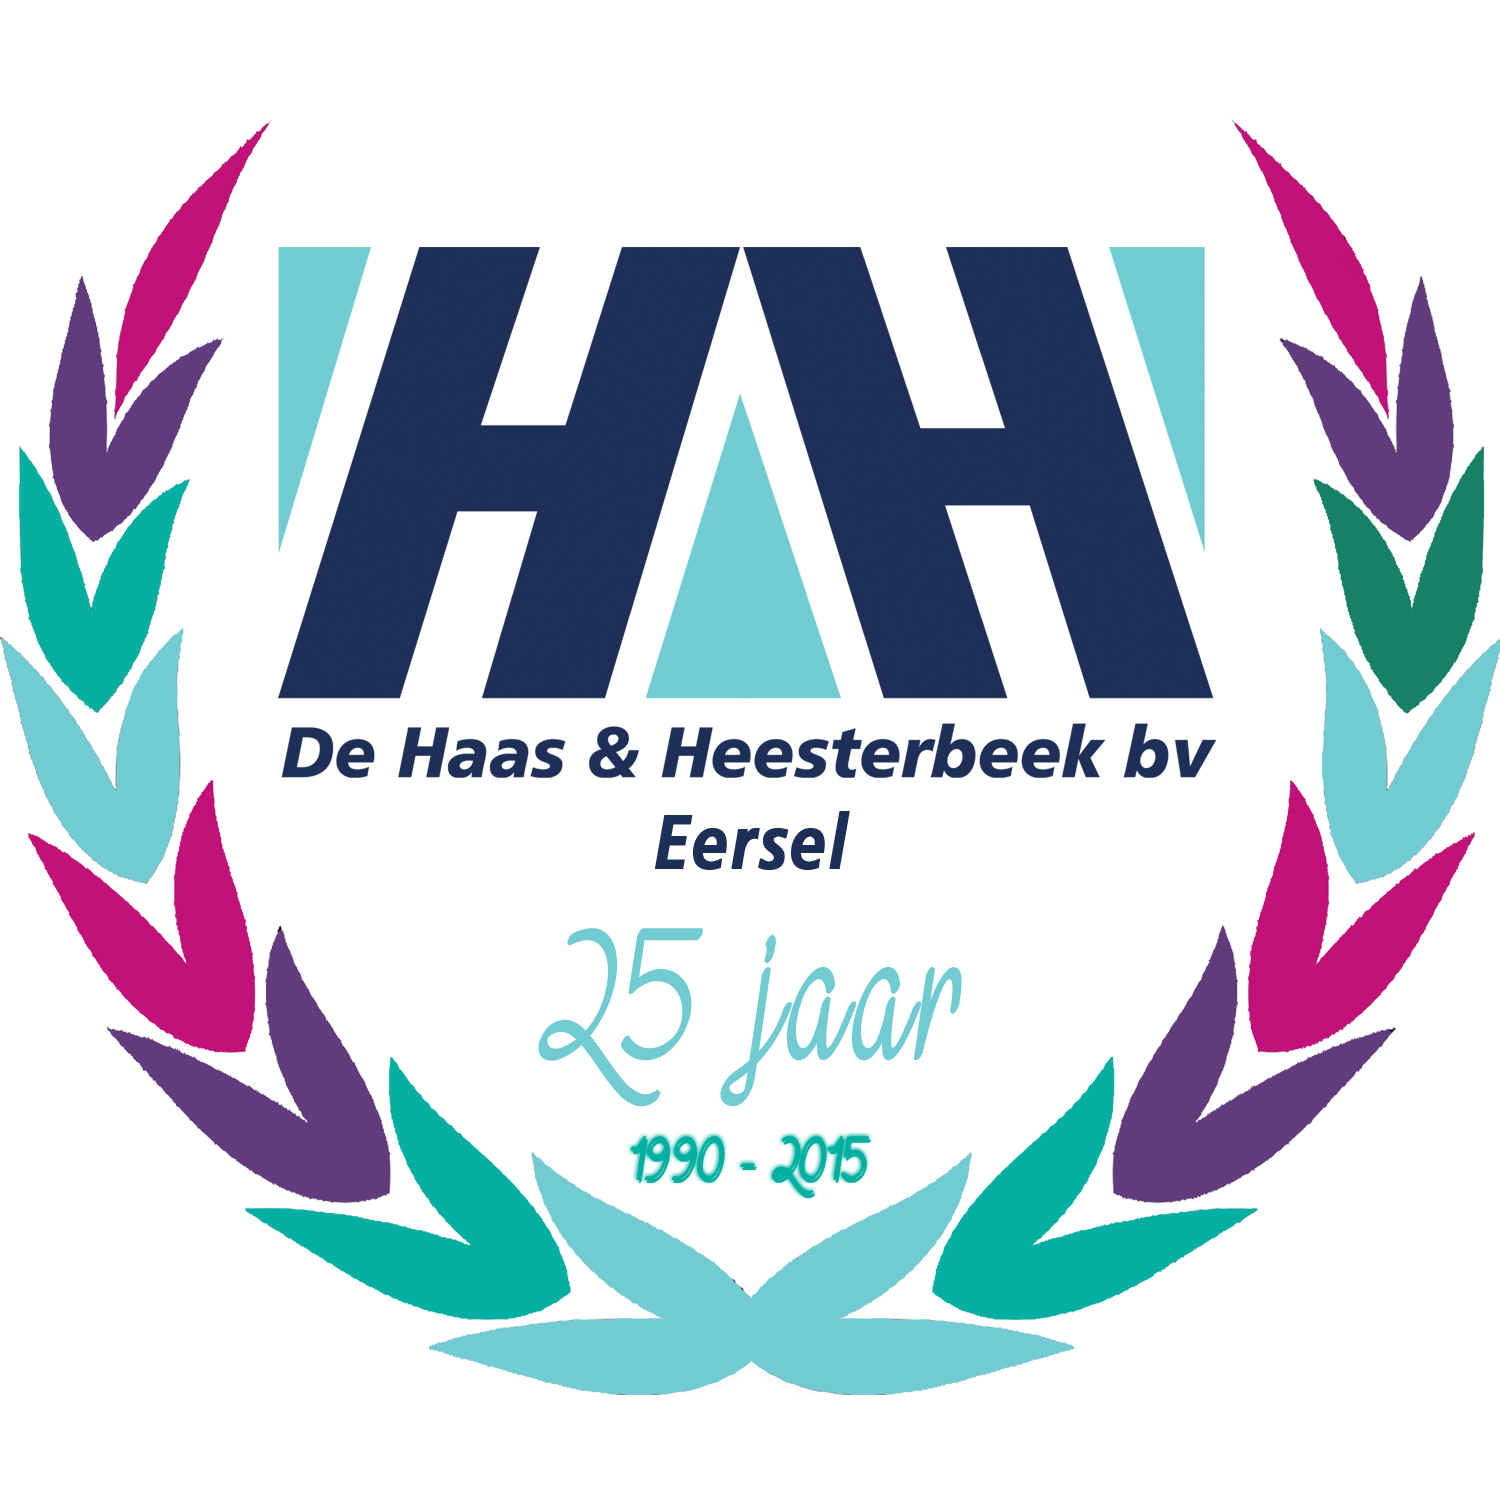 De Haas & Heesterbeek BV